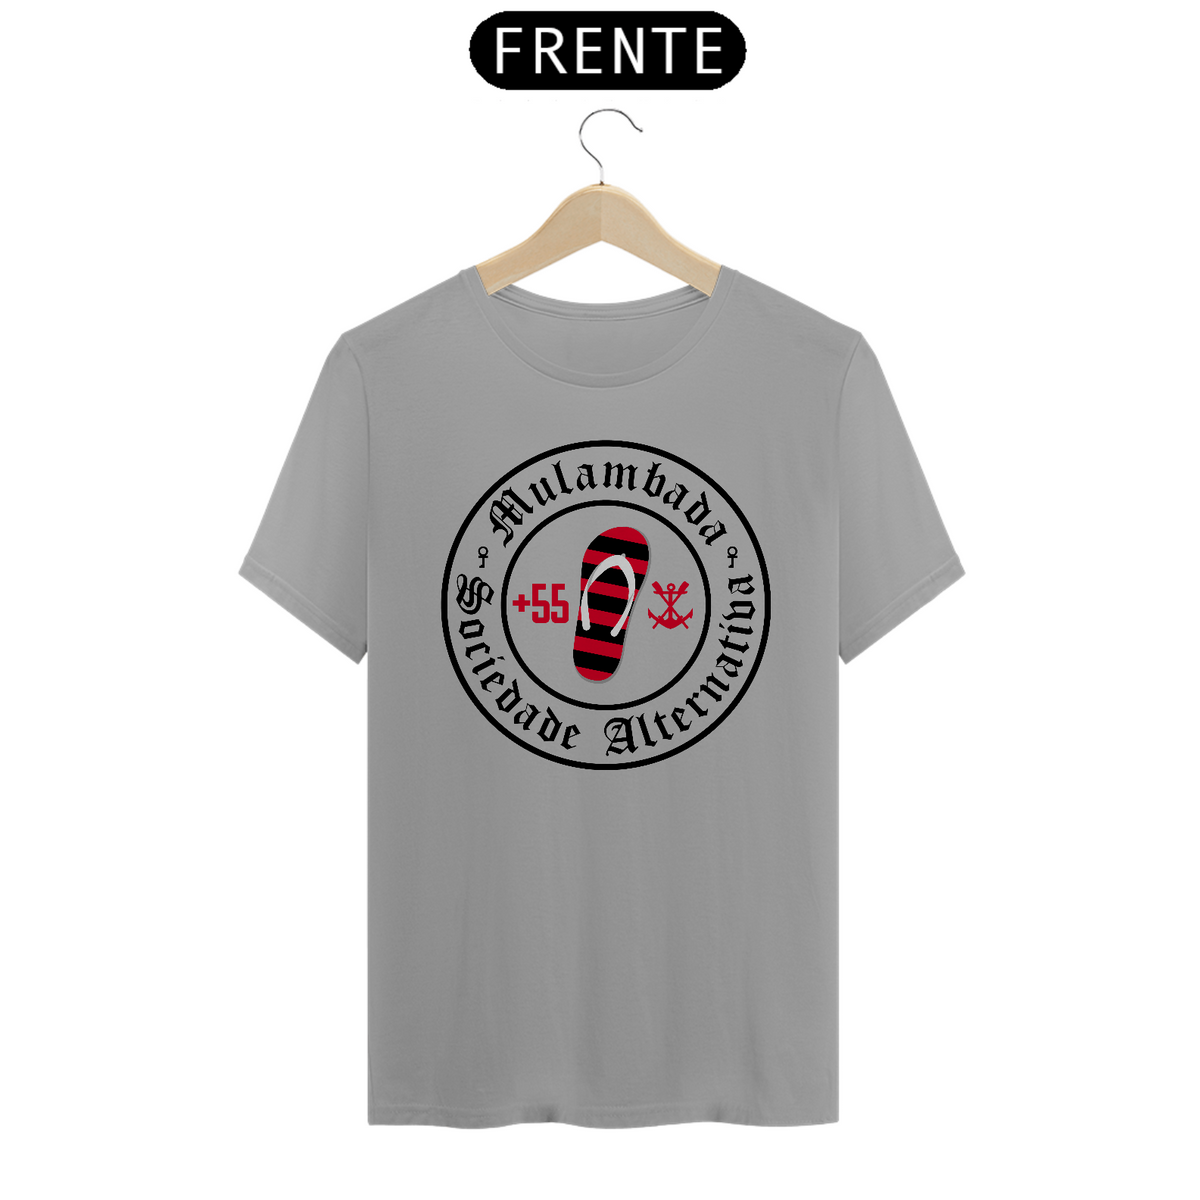 Nome do produto: Sociedade Alternativa (++55) - T-Shirt Quality - Branco Cinza